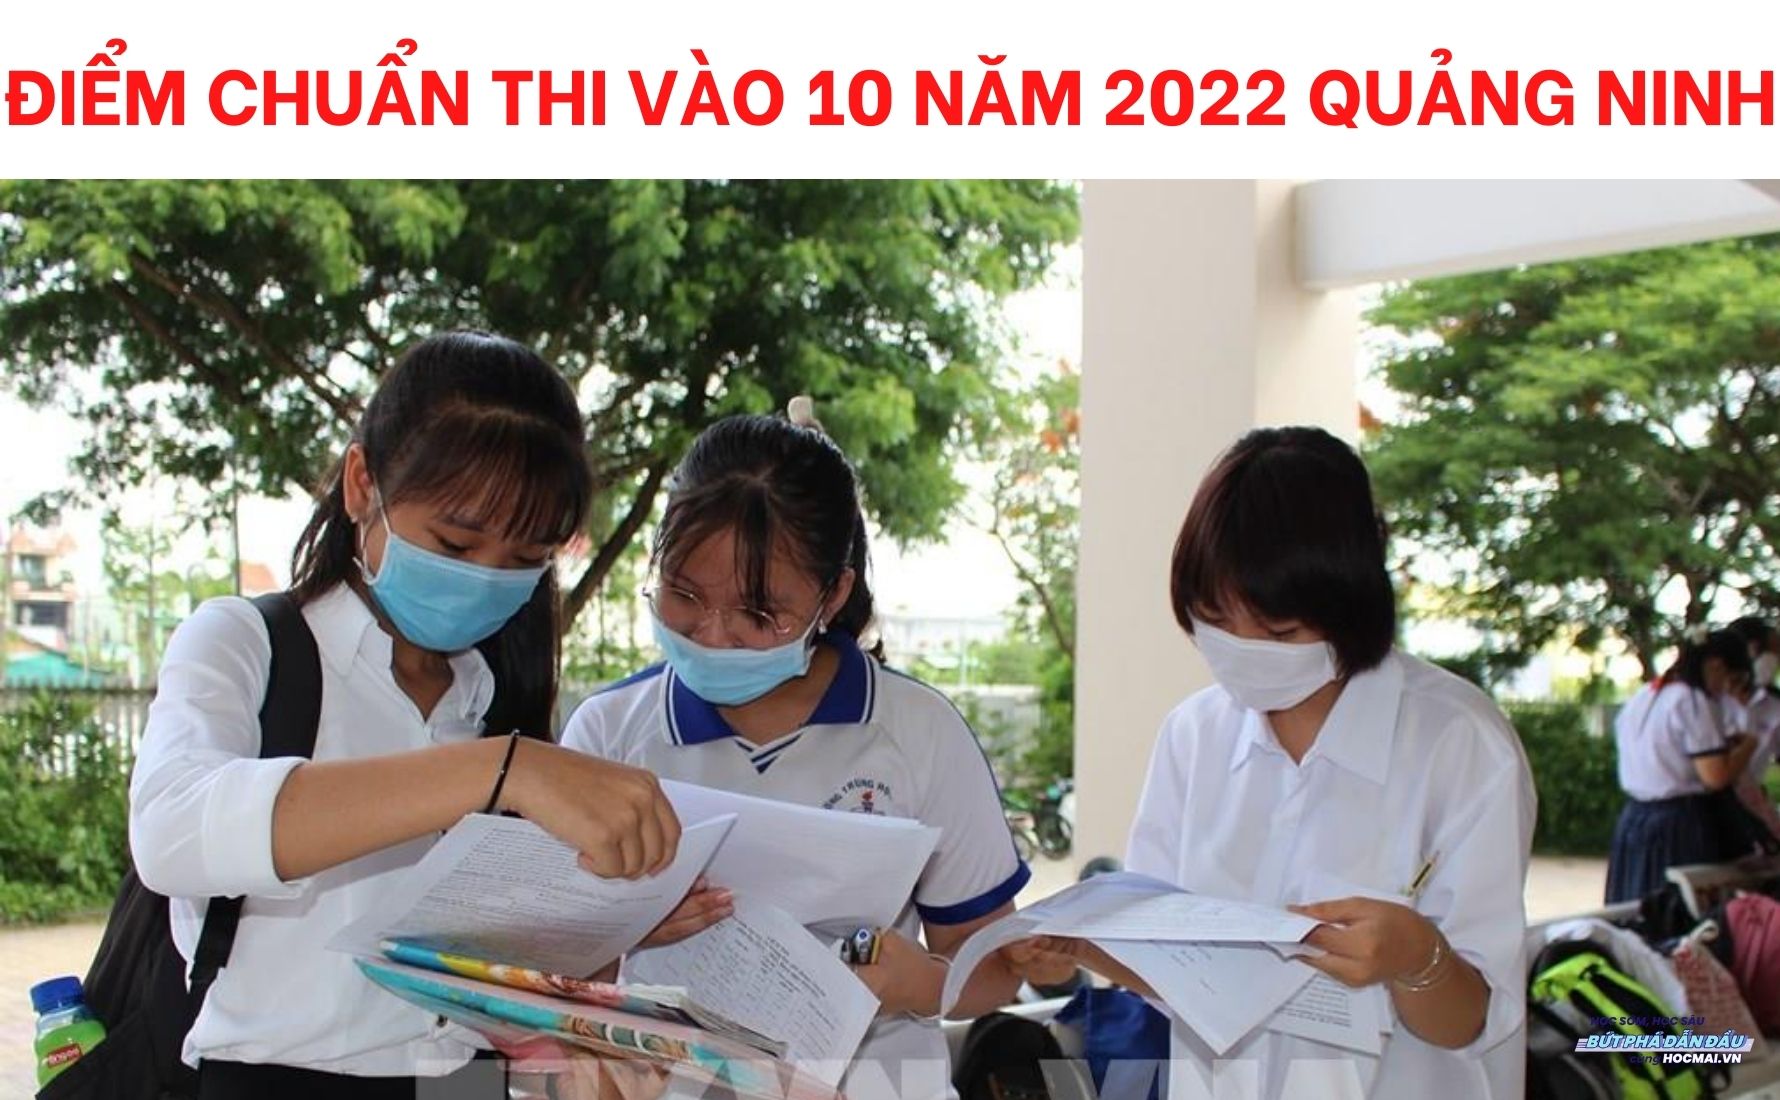 Điểm chuẩn thi vào lớp 10 Quảng Ninh năm 2022 có được công bố không?
